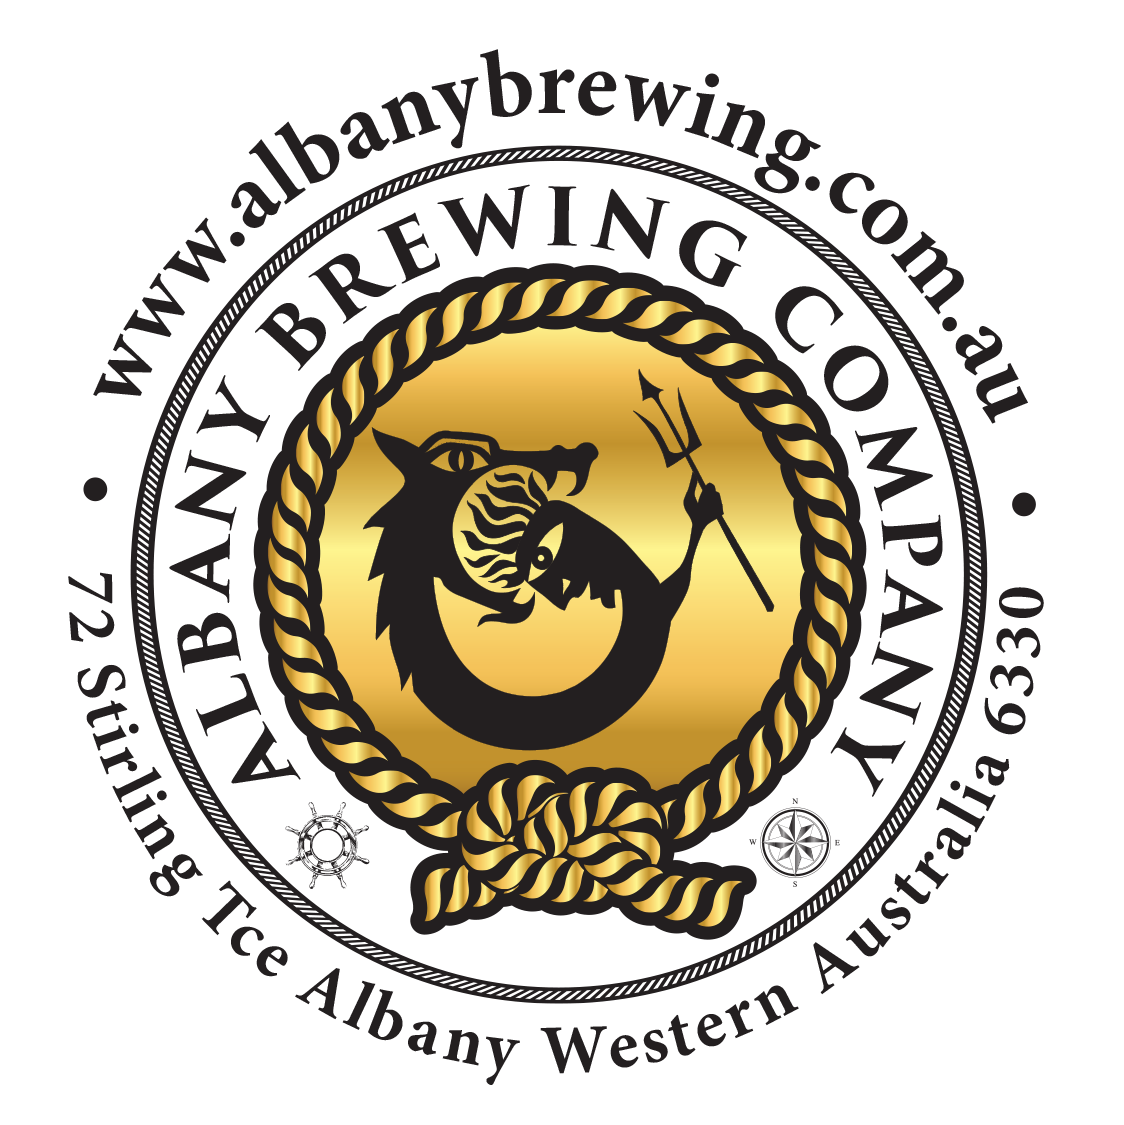 Albany Brewing Company